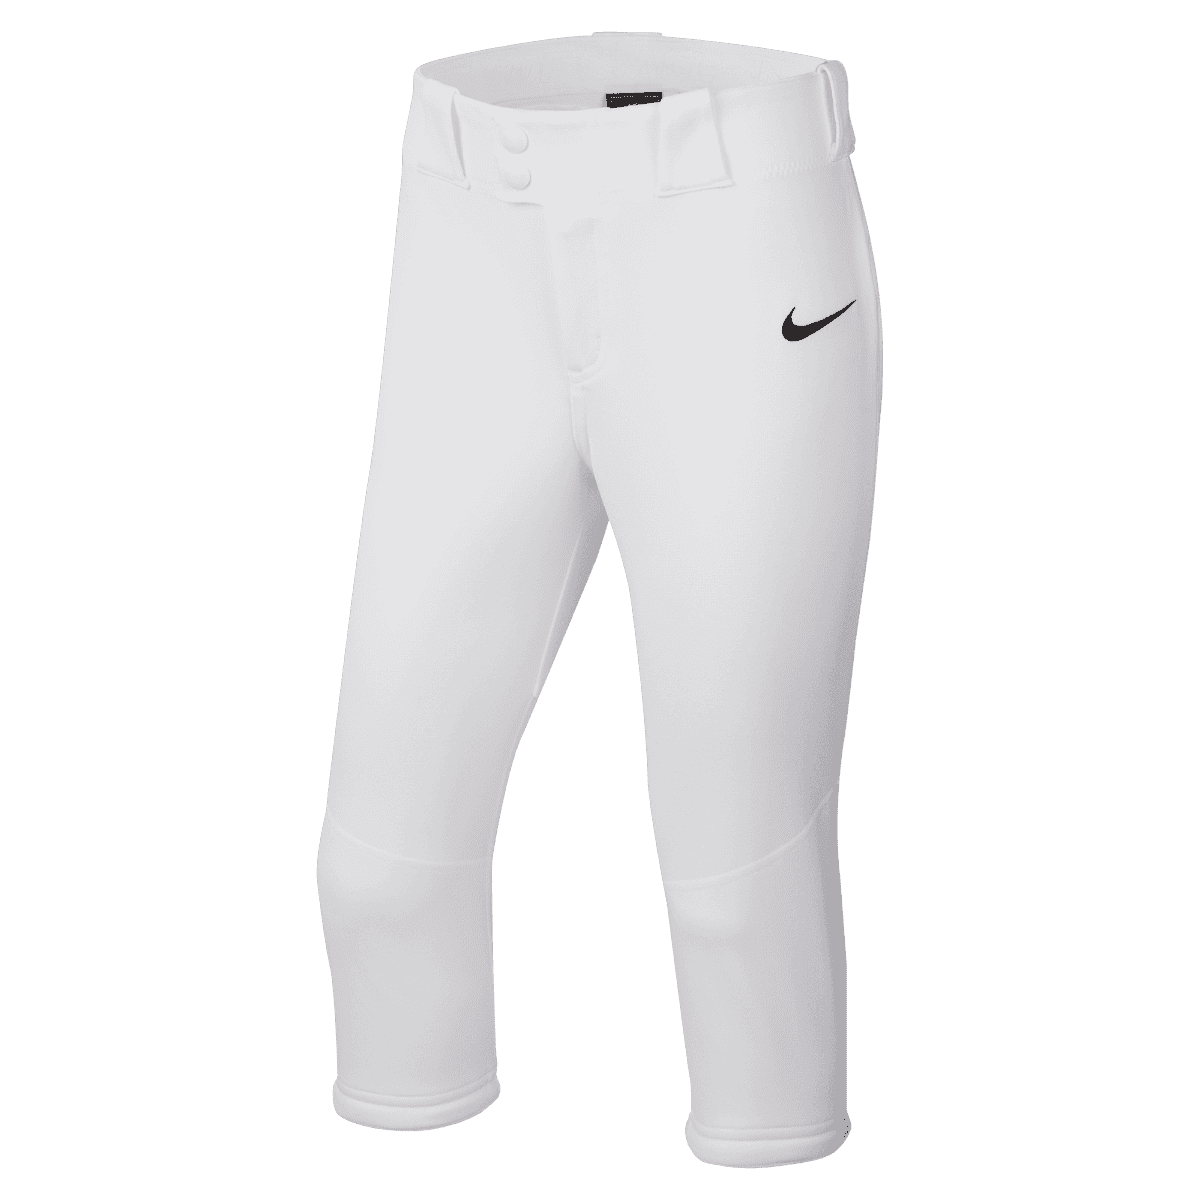 Nike Vapor Big Kids' (Boys') Elastic Baseball Pants.